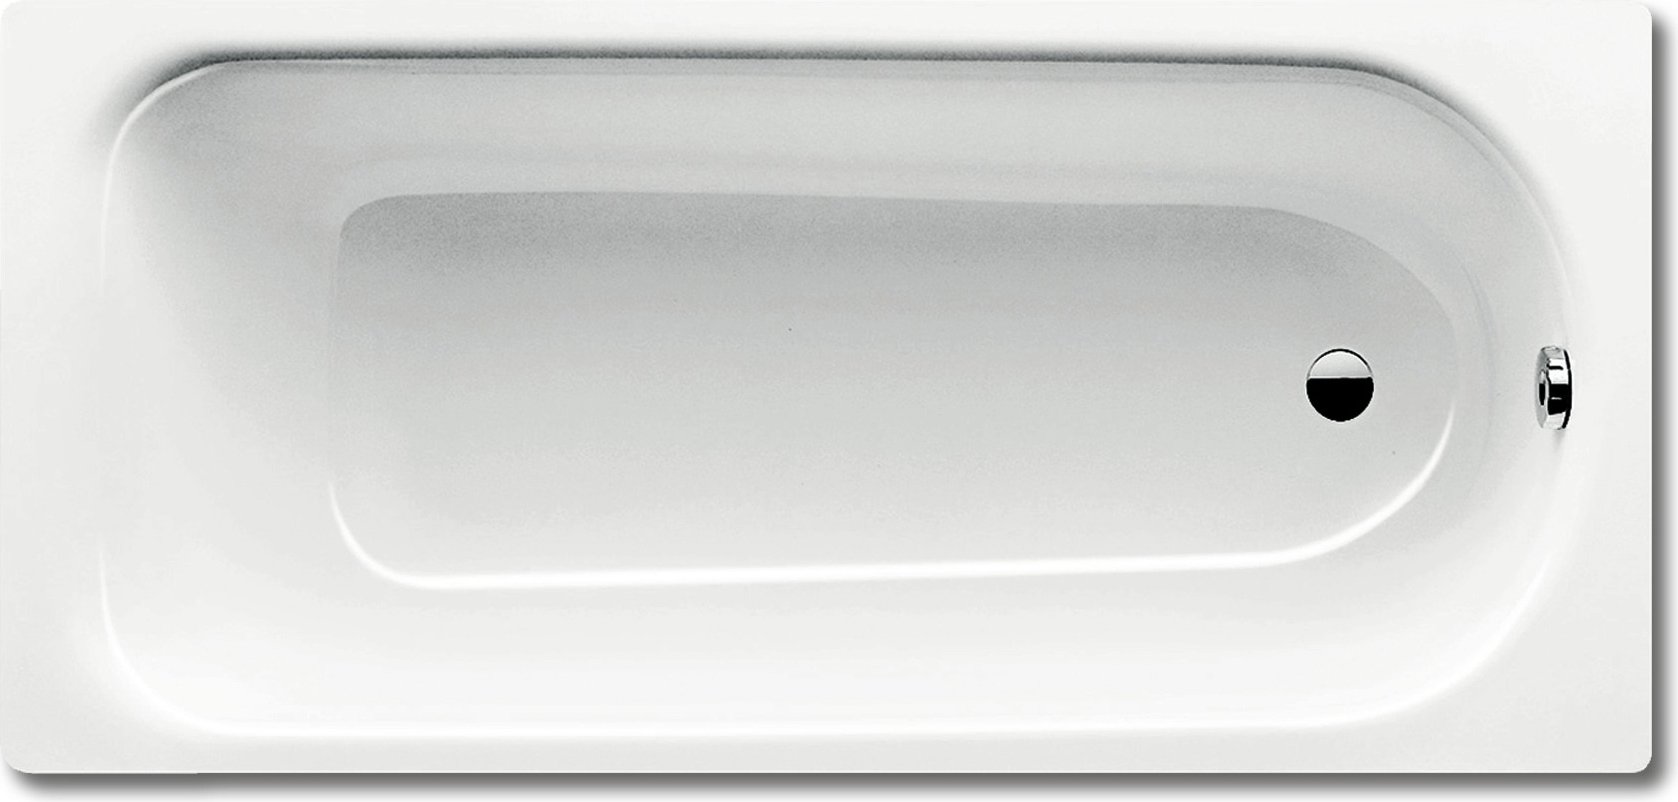 Стальная ванна Kaldewei Advantage Saniform Plus 375-1 с покрытием Anti-Slip и Easy-Clean 180x80, белый, сталь  - купить со скидкой